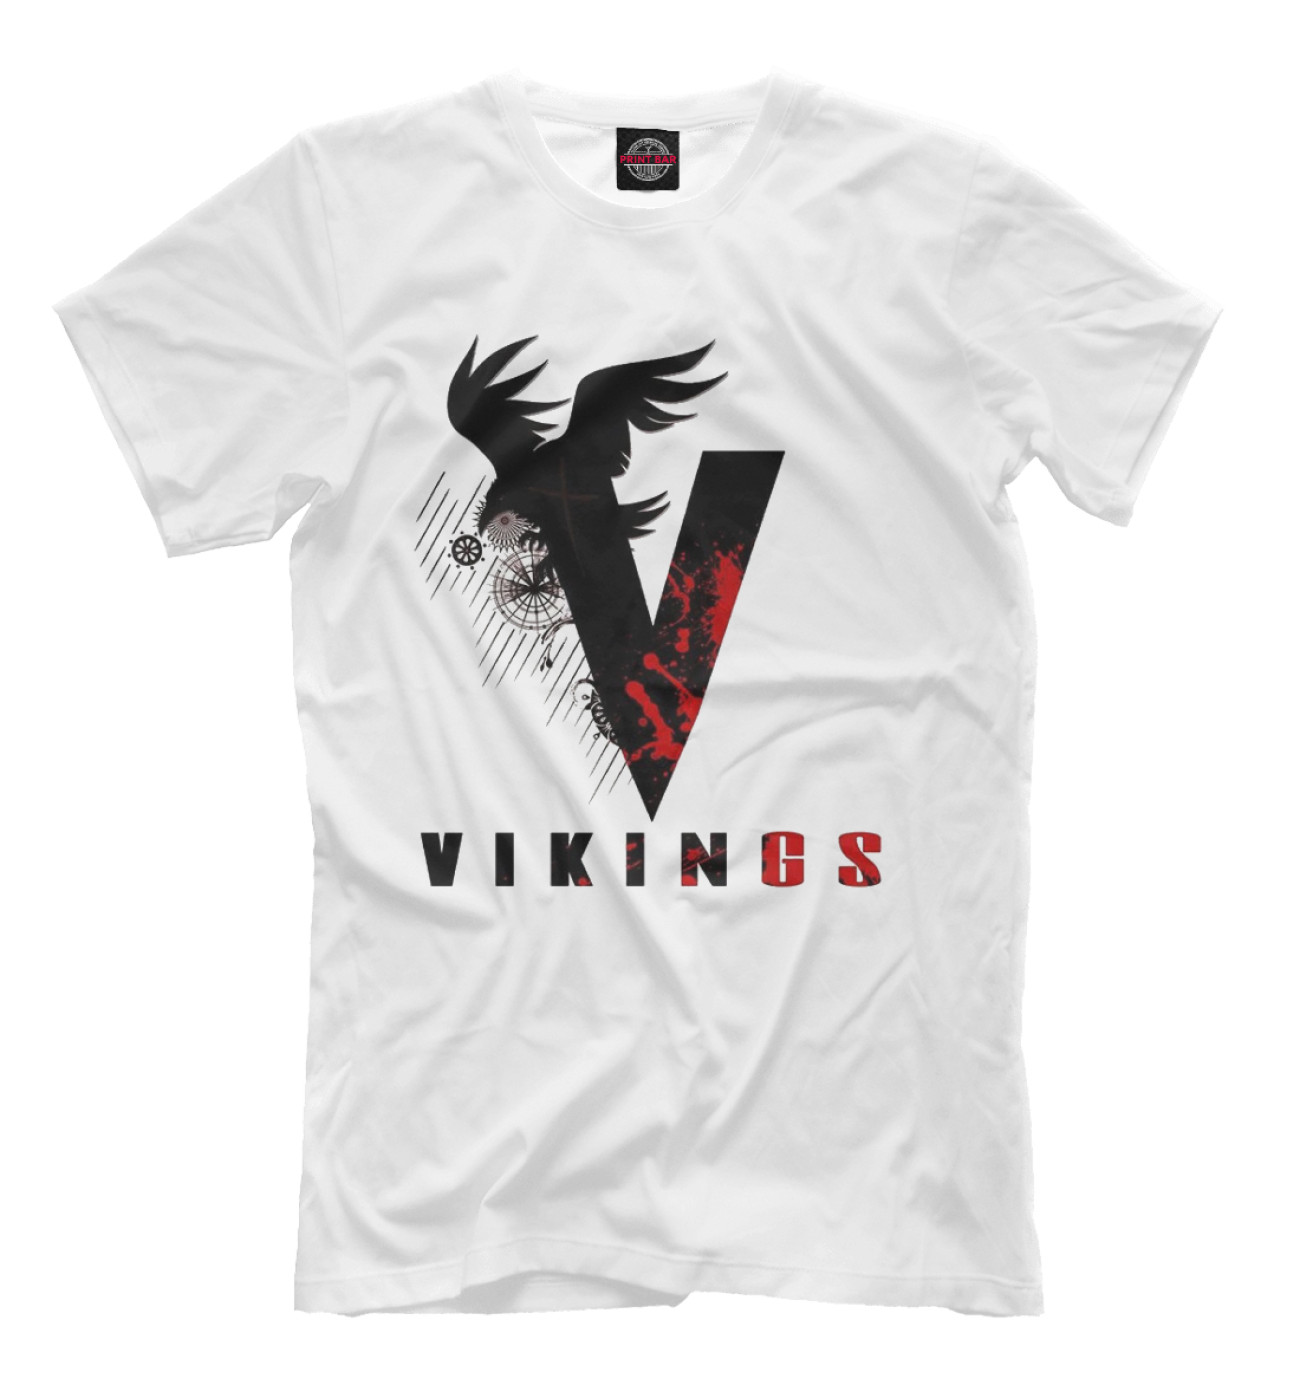 Мужская Футболка Vikings, артикул: VIK-584723-fut-2